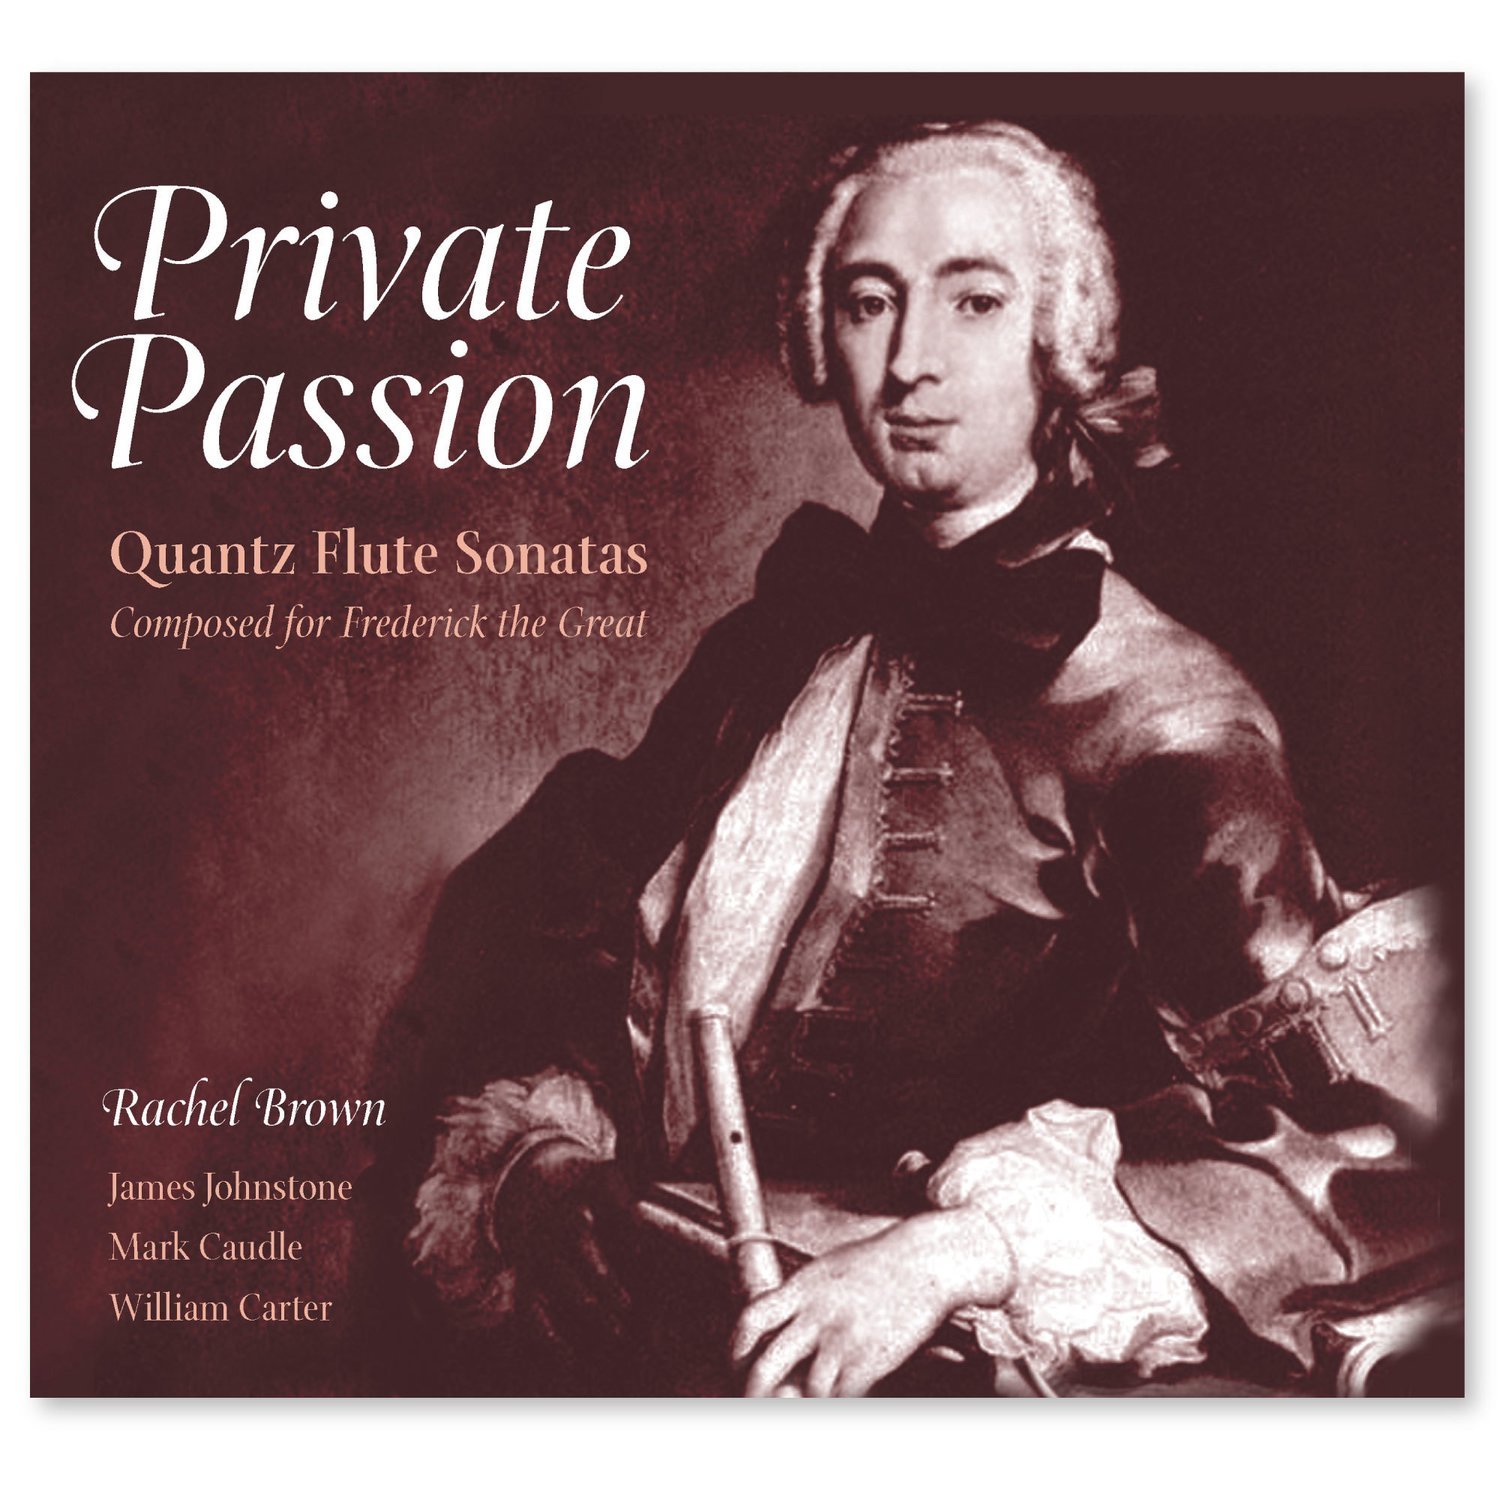 Private Passion - Quantz Flute Sonatas Download